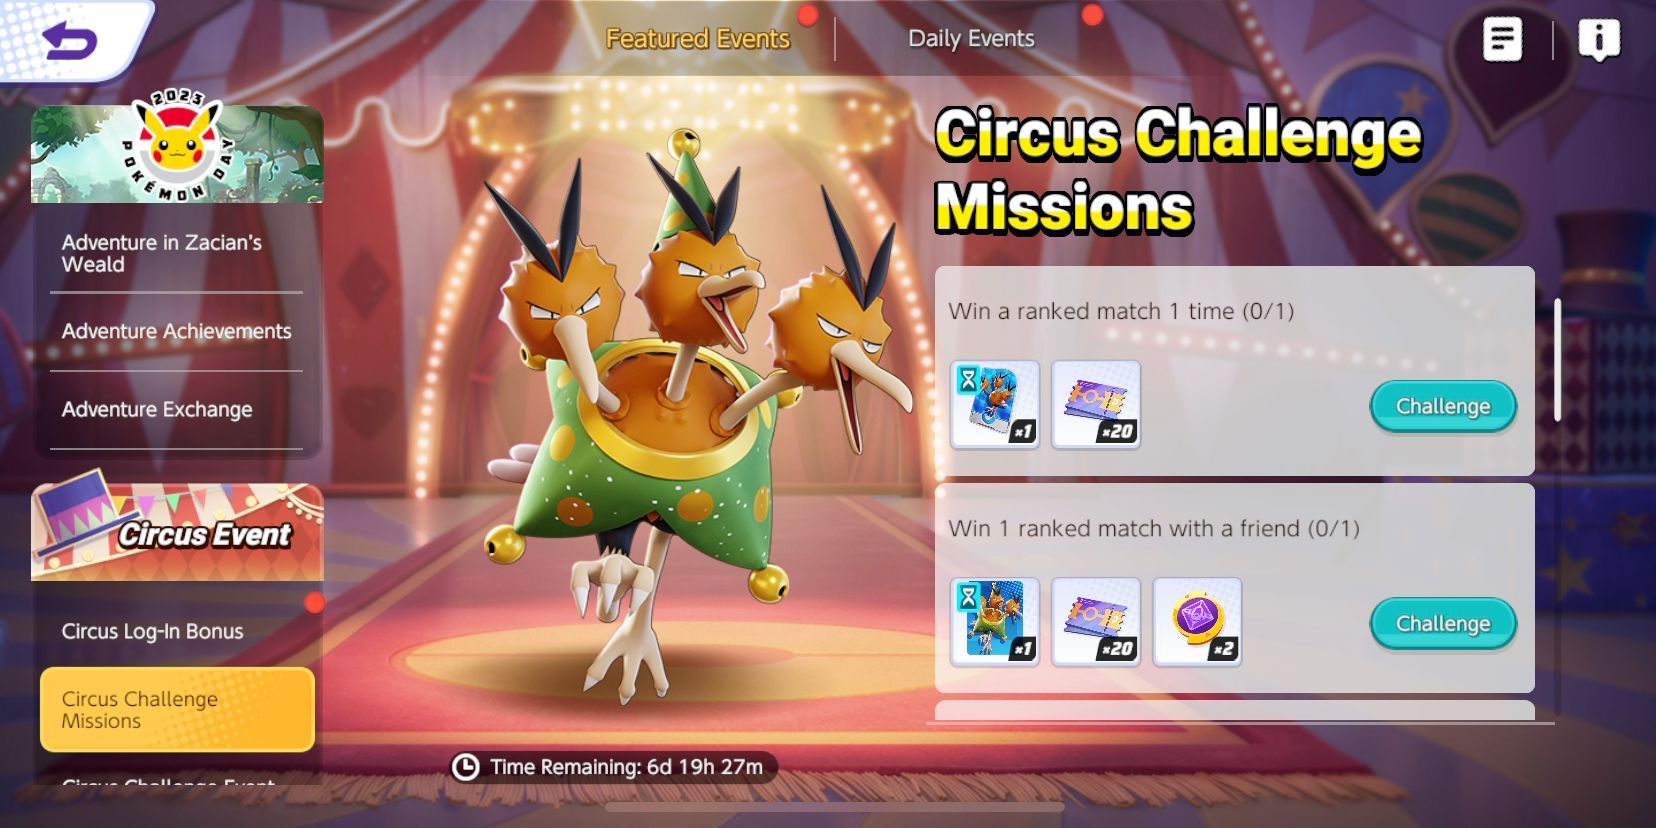 Circus Challenge Missions-skærmen fra Pokemon Unite, der viser begivenhedsmissioner og belønninger